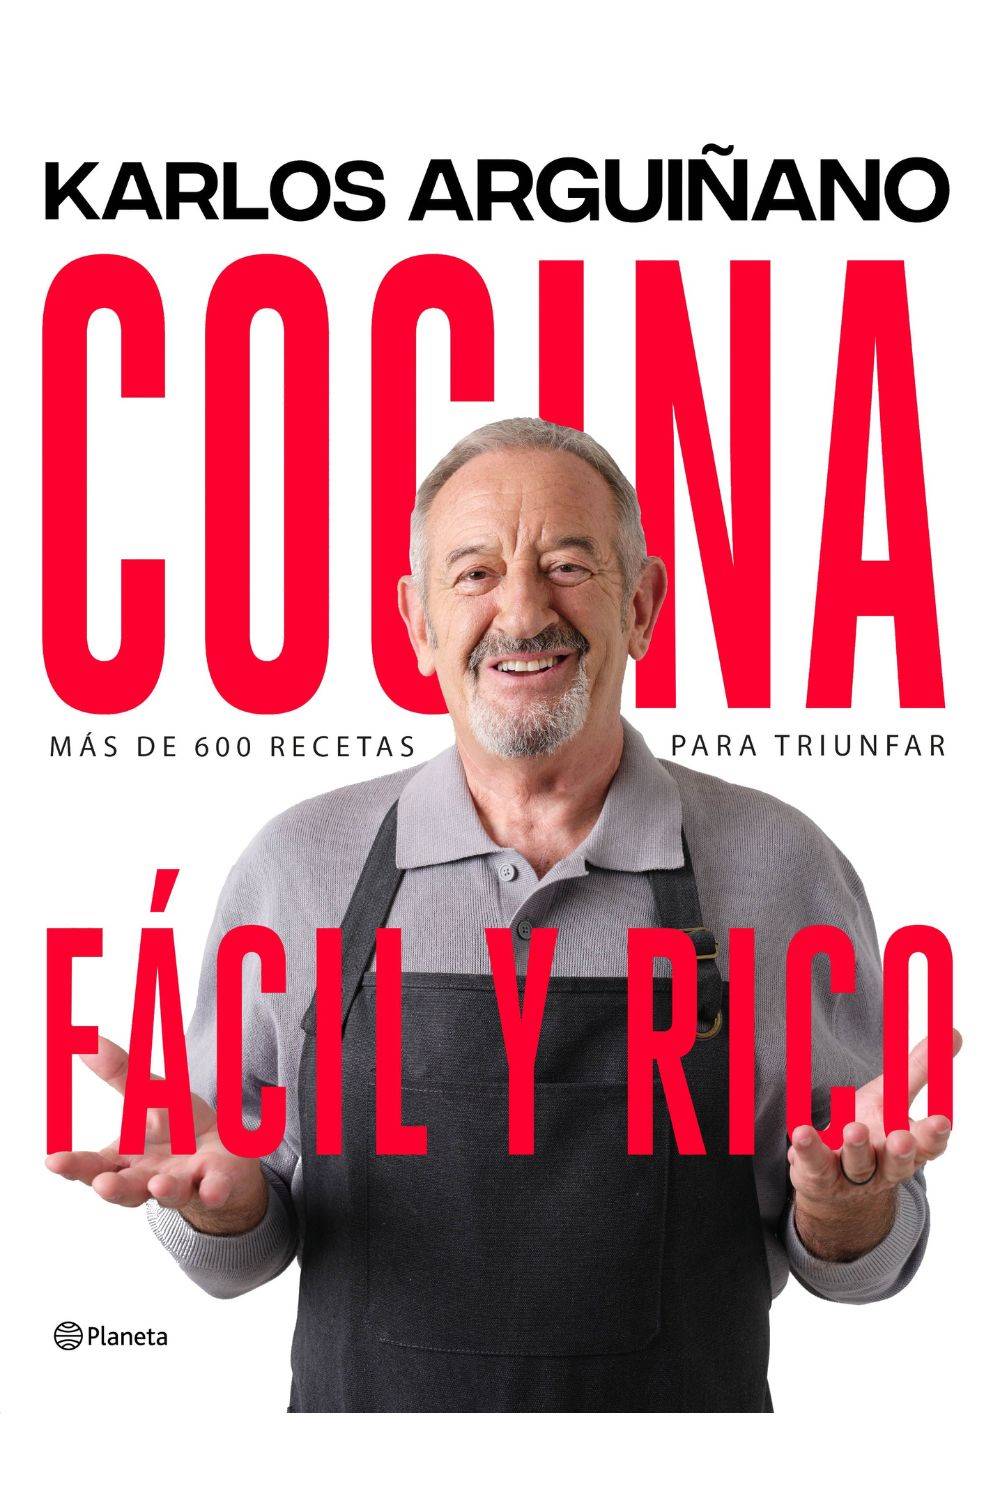 Libros prácticos: ‘Cocina fácil y rico’ de Karlos Arguiñano